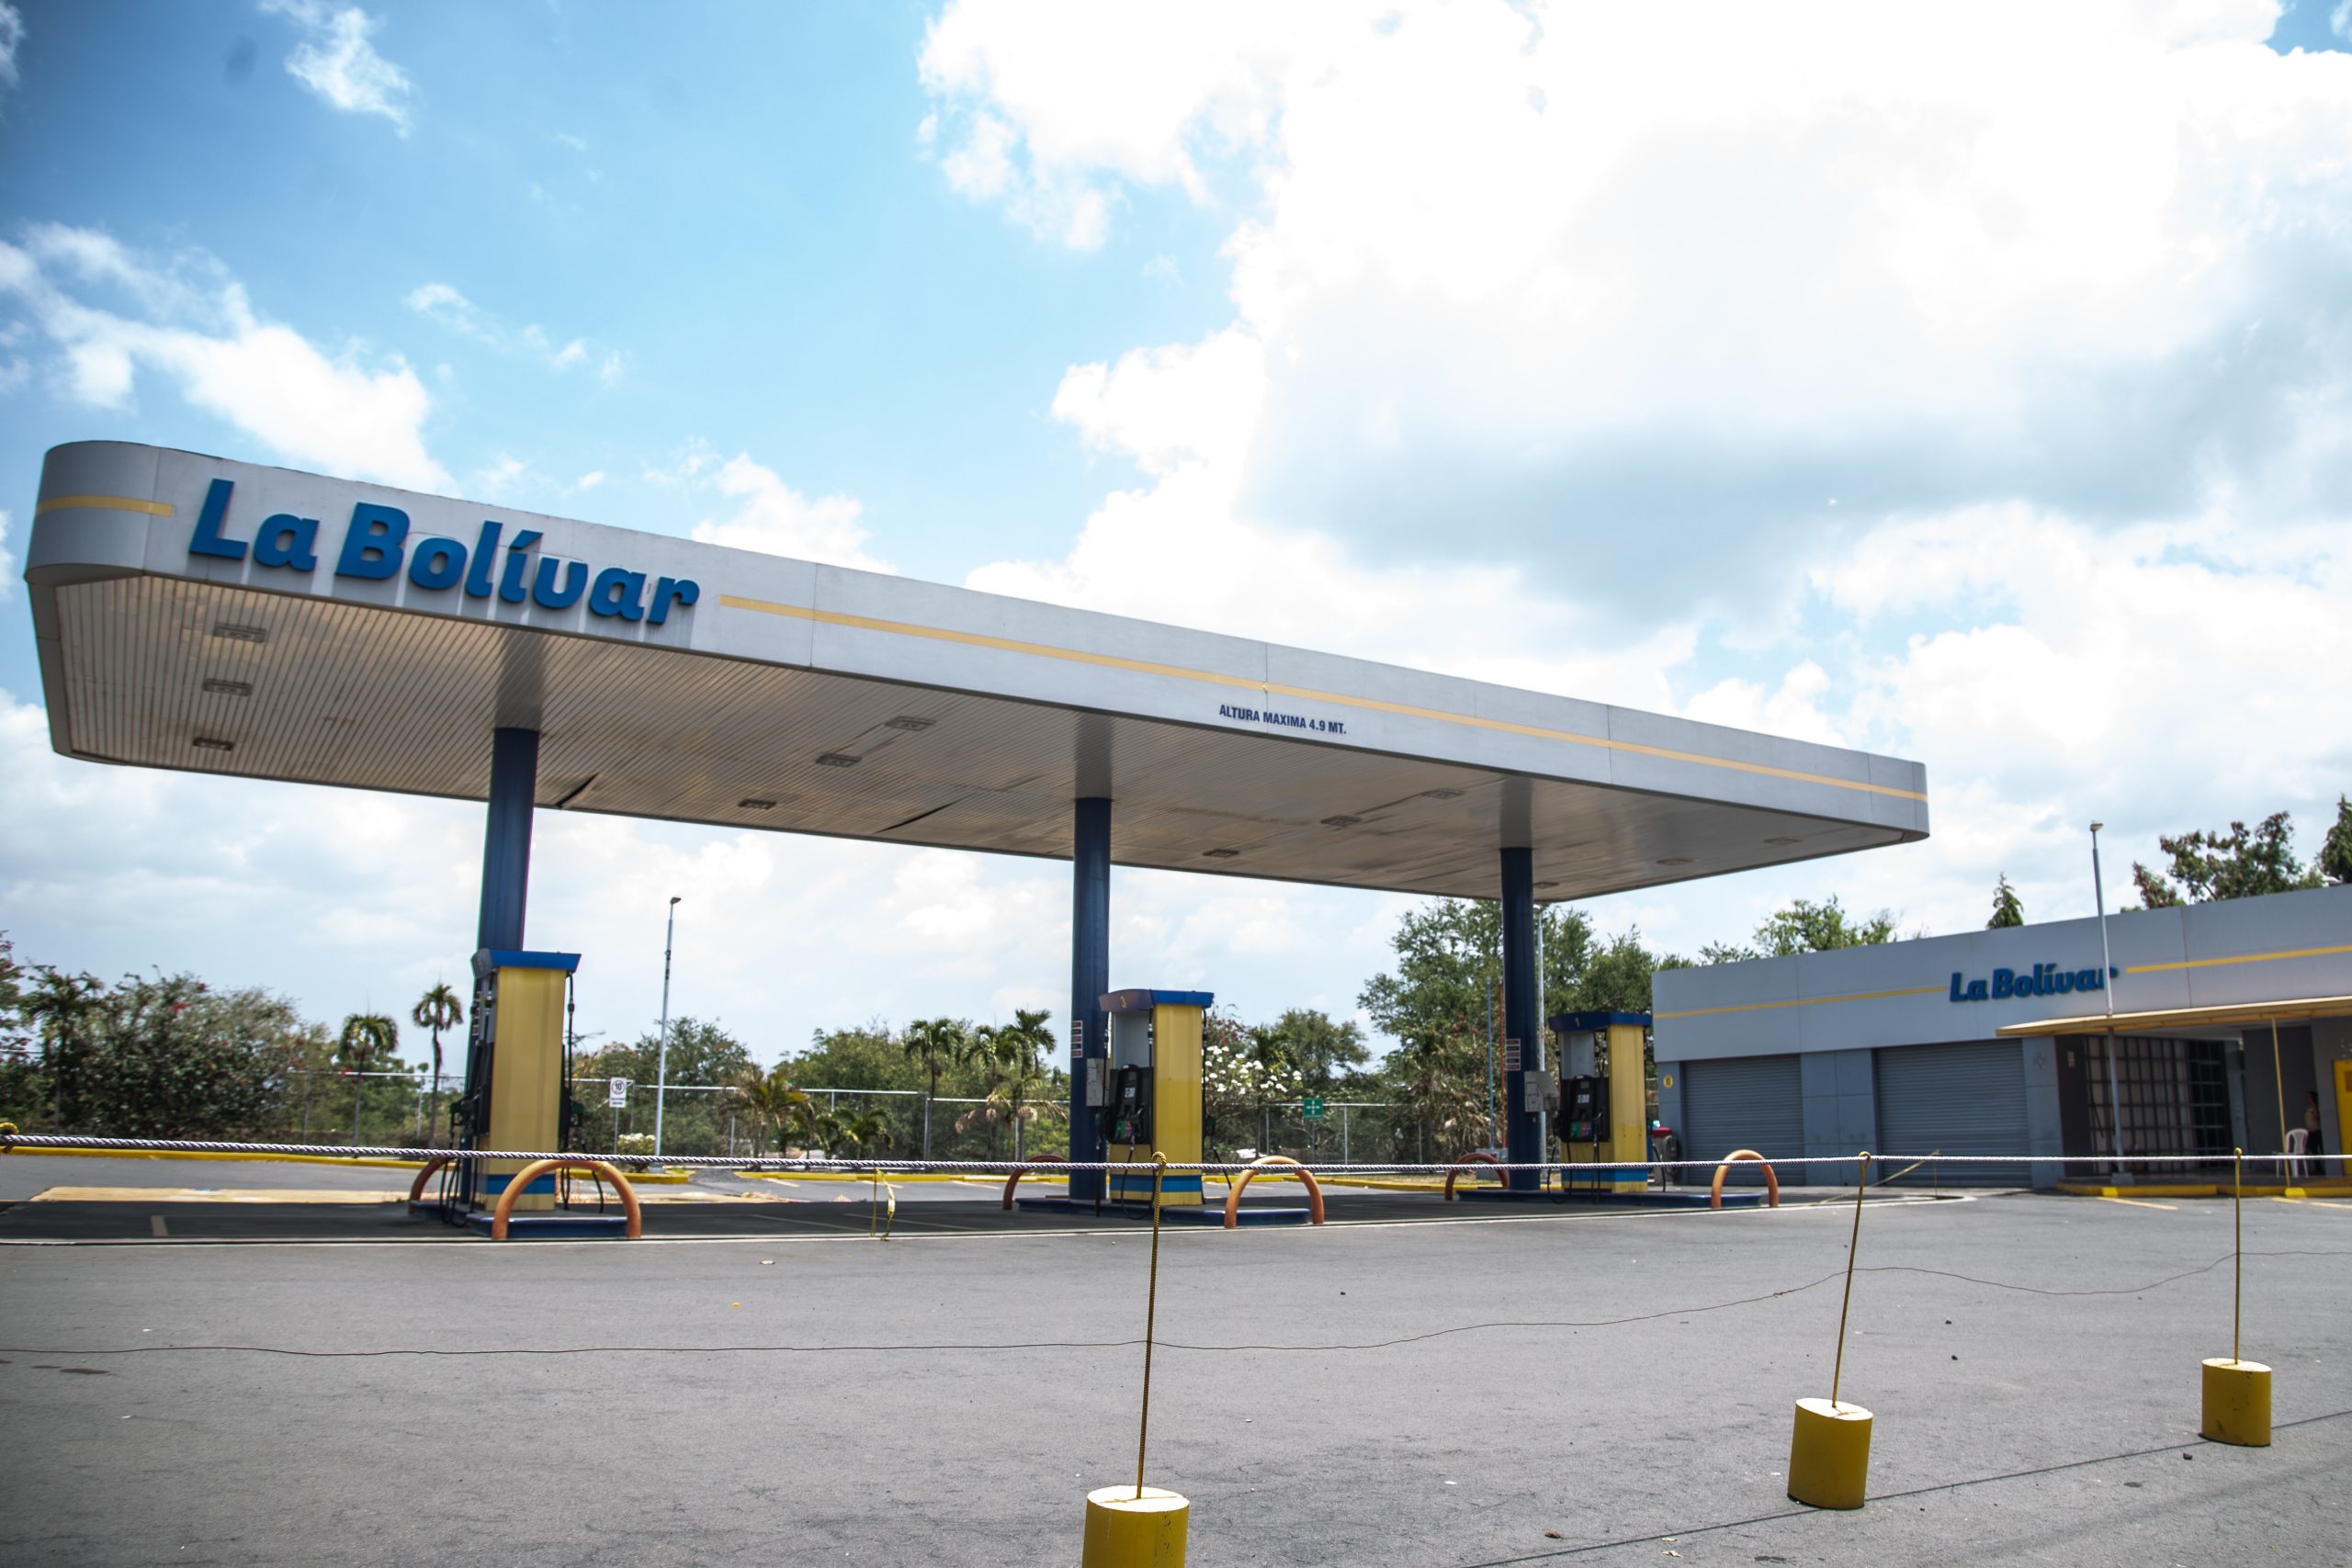 Oligopolio y complicidad, razones por las que Nicaragua tiene los combustibles más caros de Centroamérica